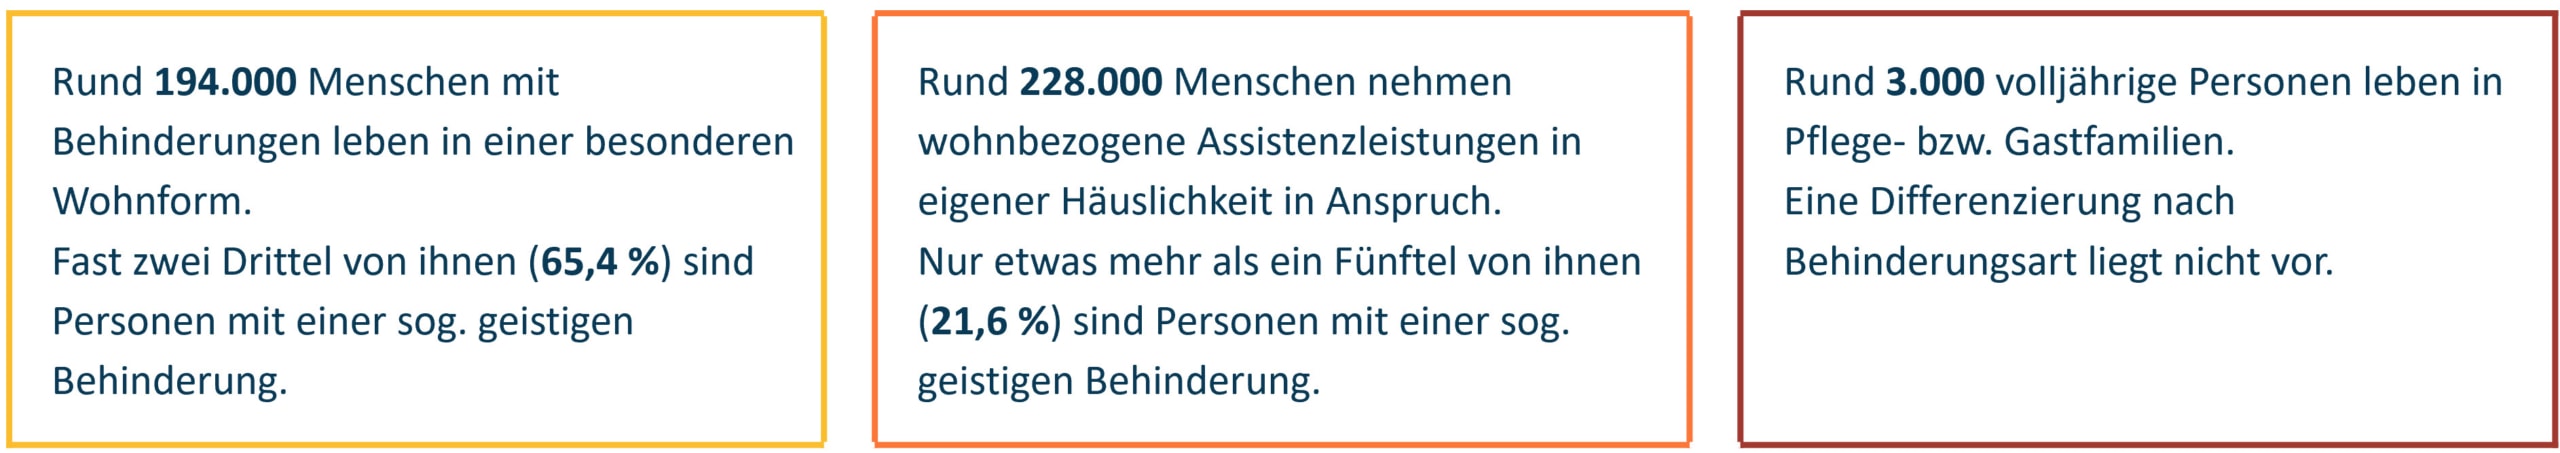 Drei orangefarbene Rechtecke mit deutschem Text, die jeweils Statistiken zu Menschen mit Behinderungen beschreiben, die in verschiedenen Unterkünften leben.